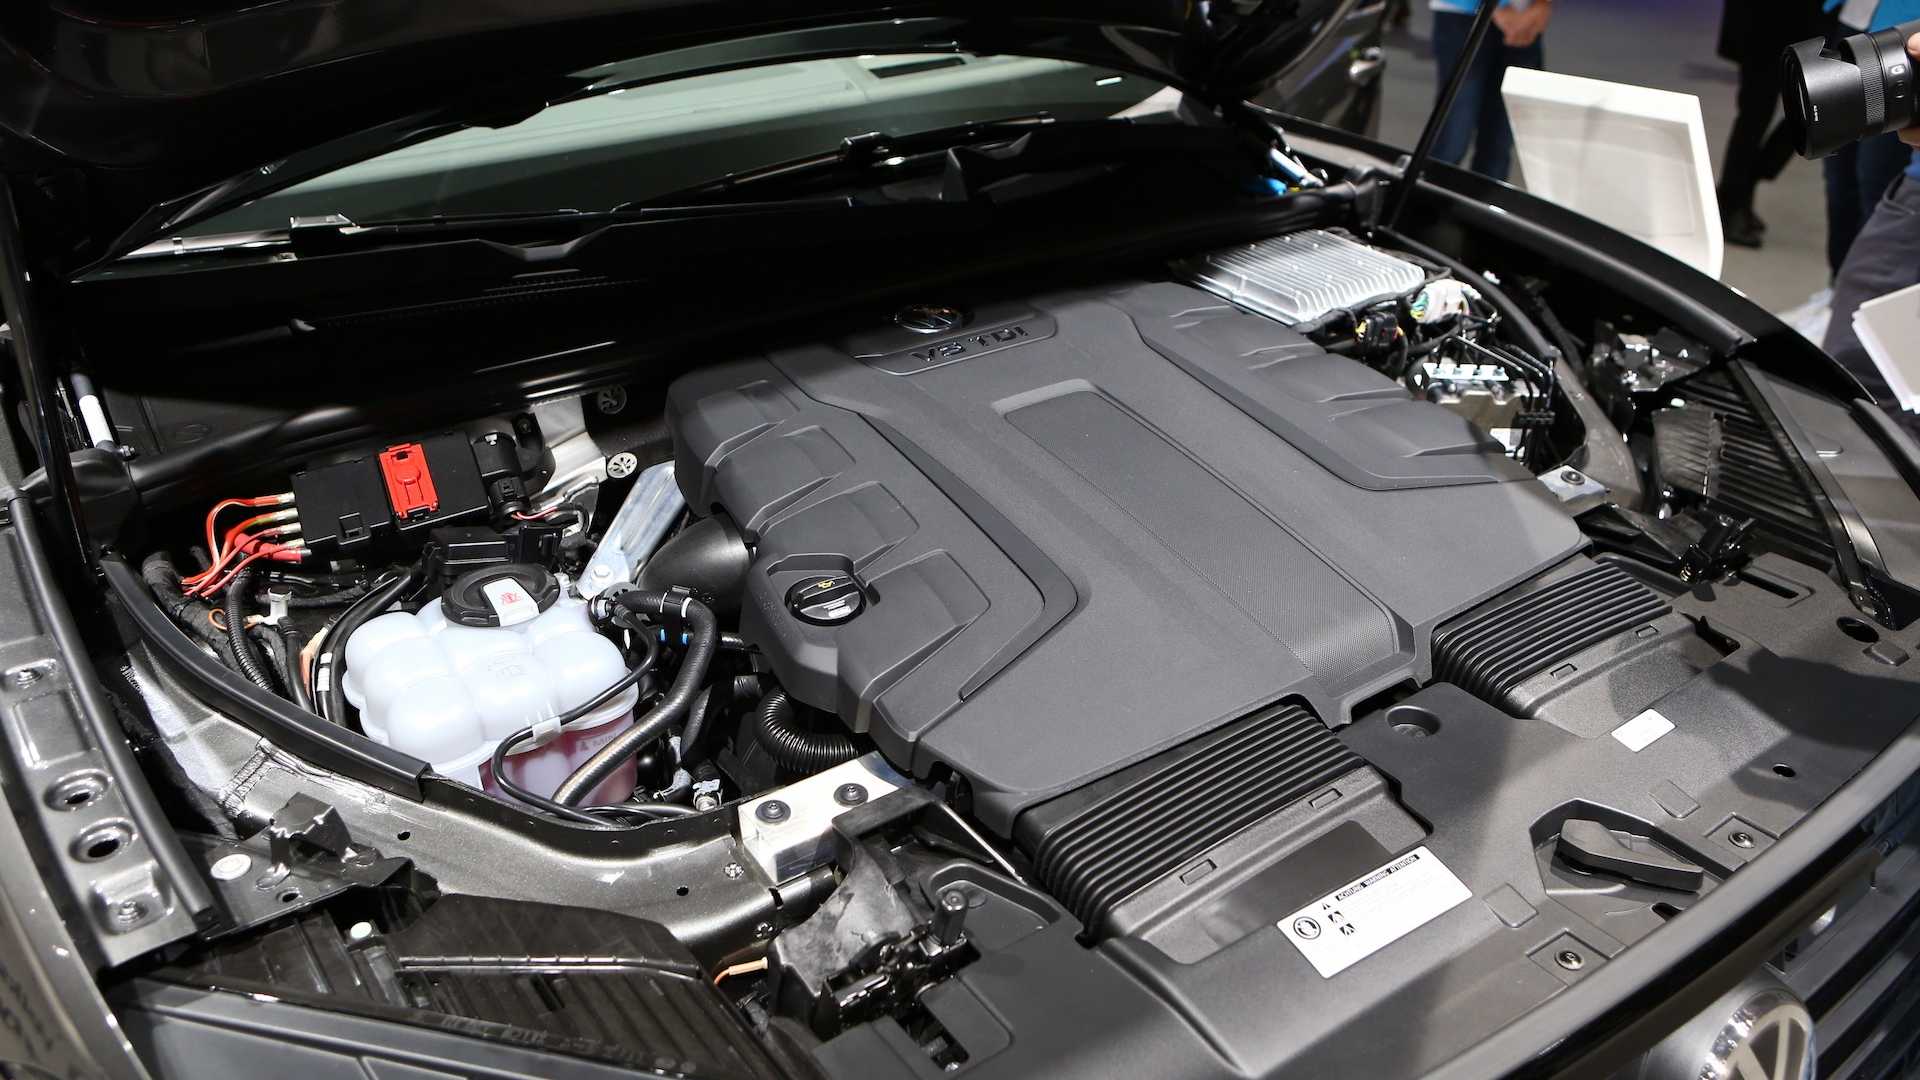 VW V8 TDI engine